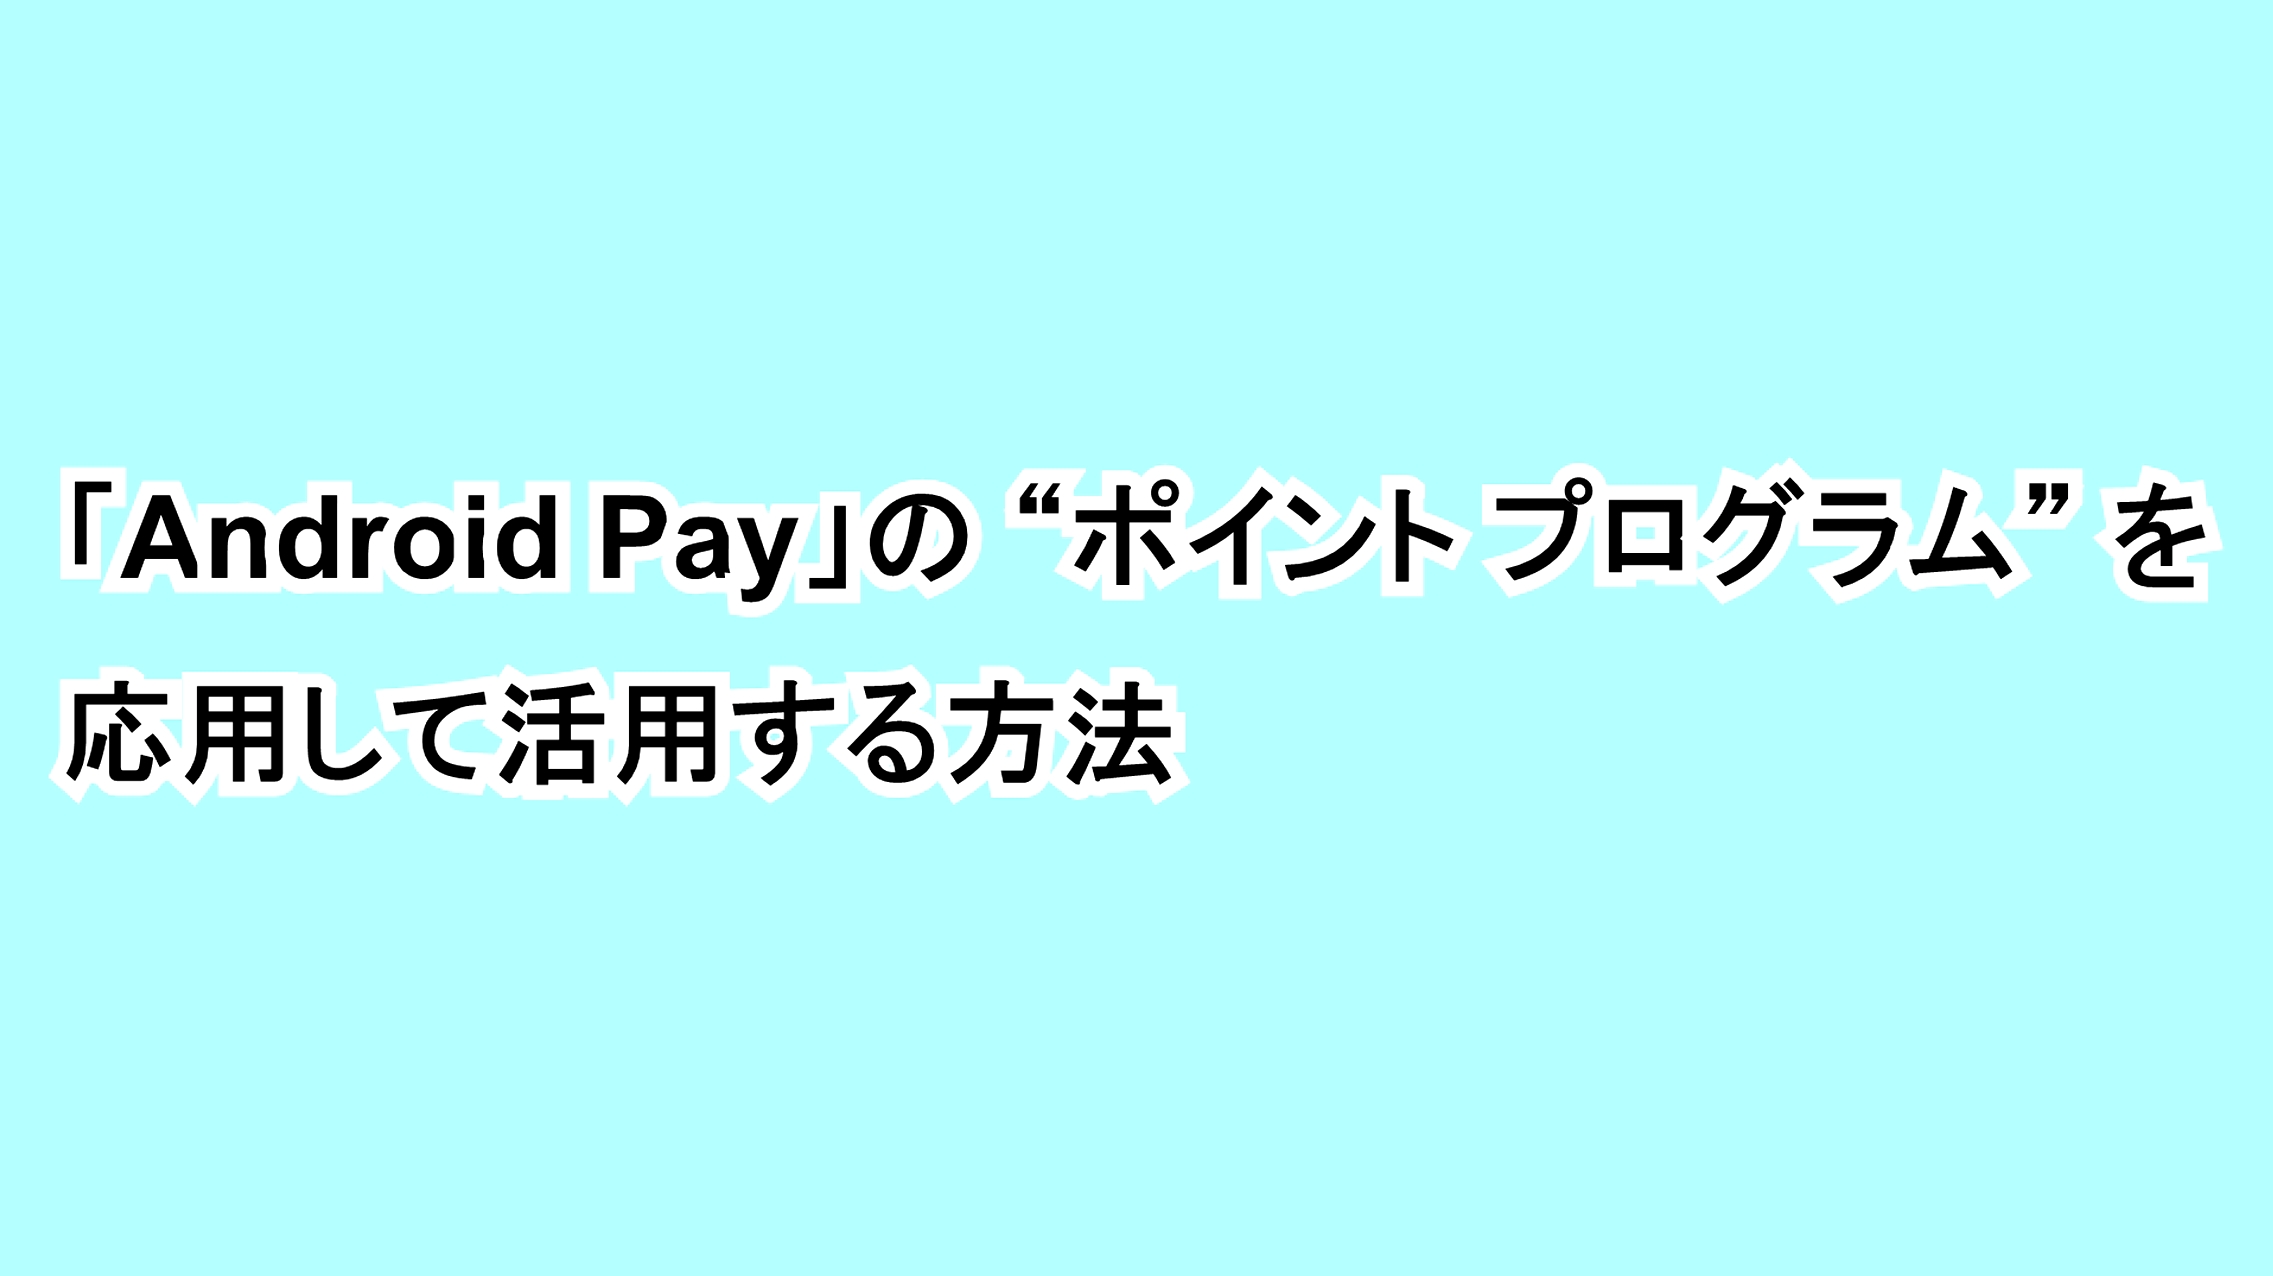 「Android Pay」の“ポイント プログラム”を応用して活用する方法